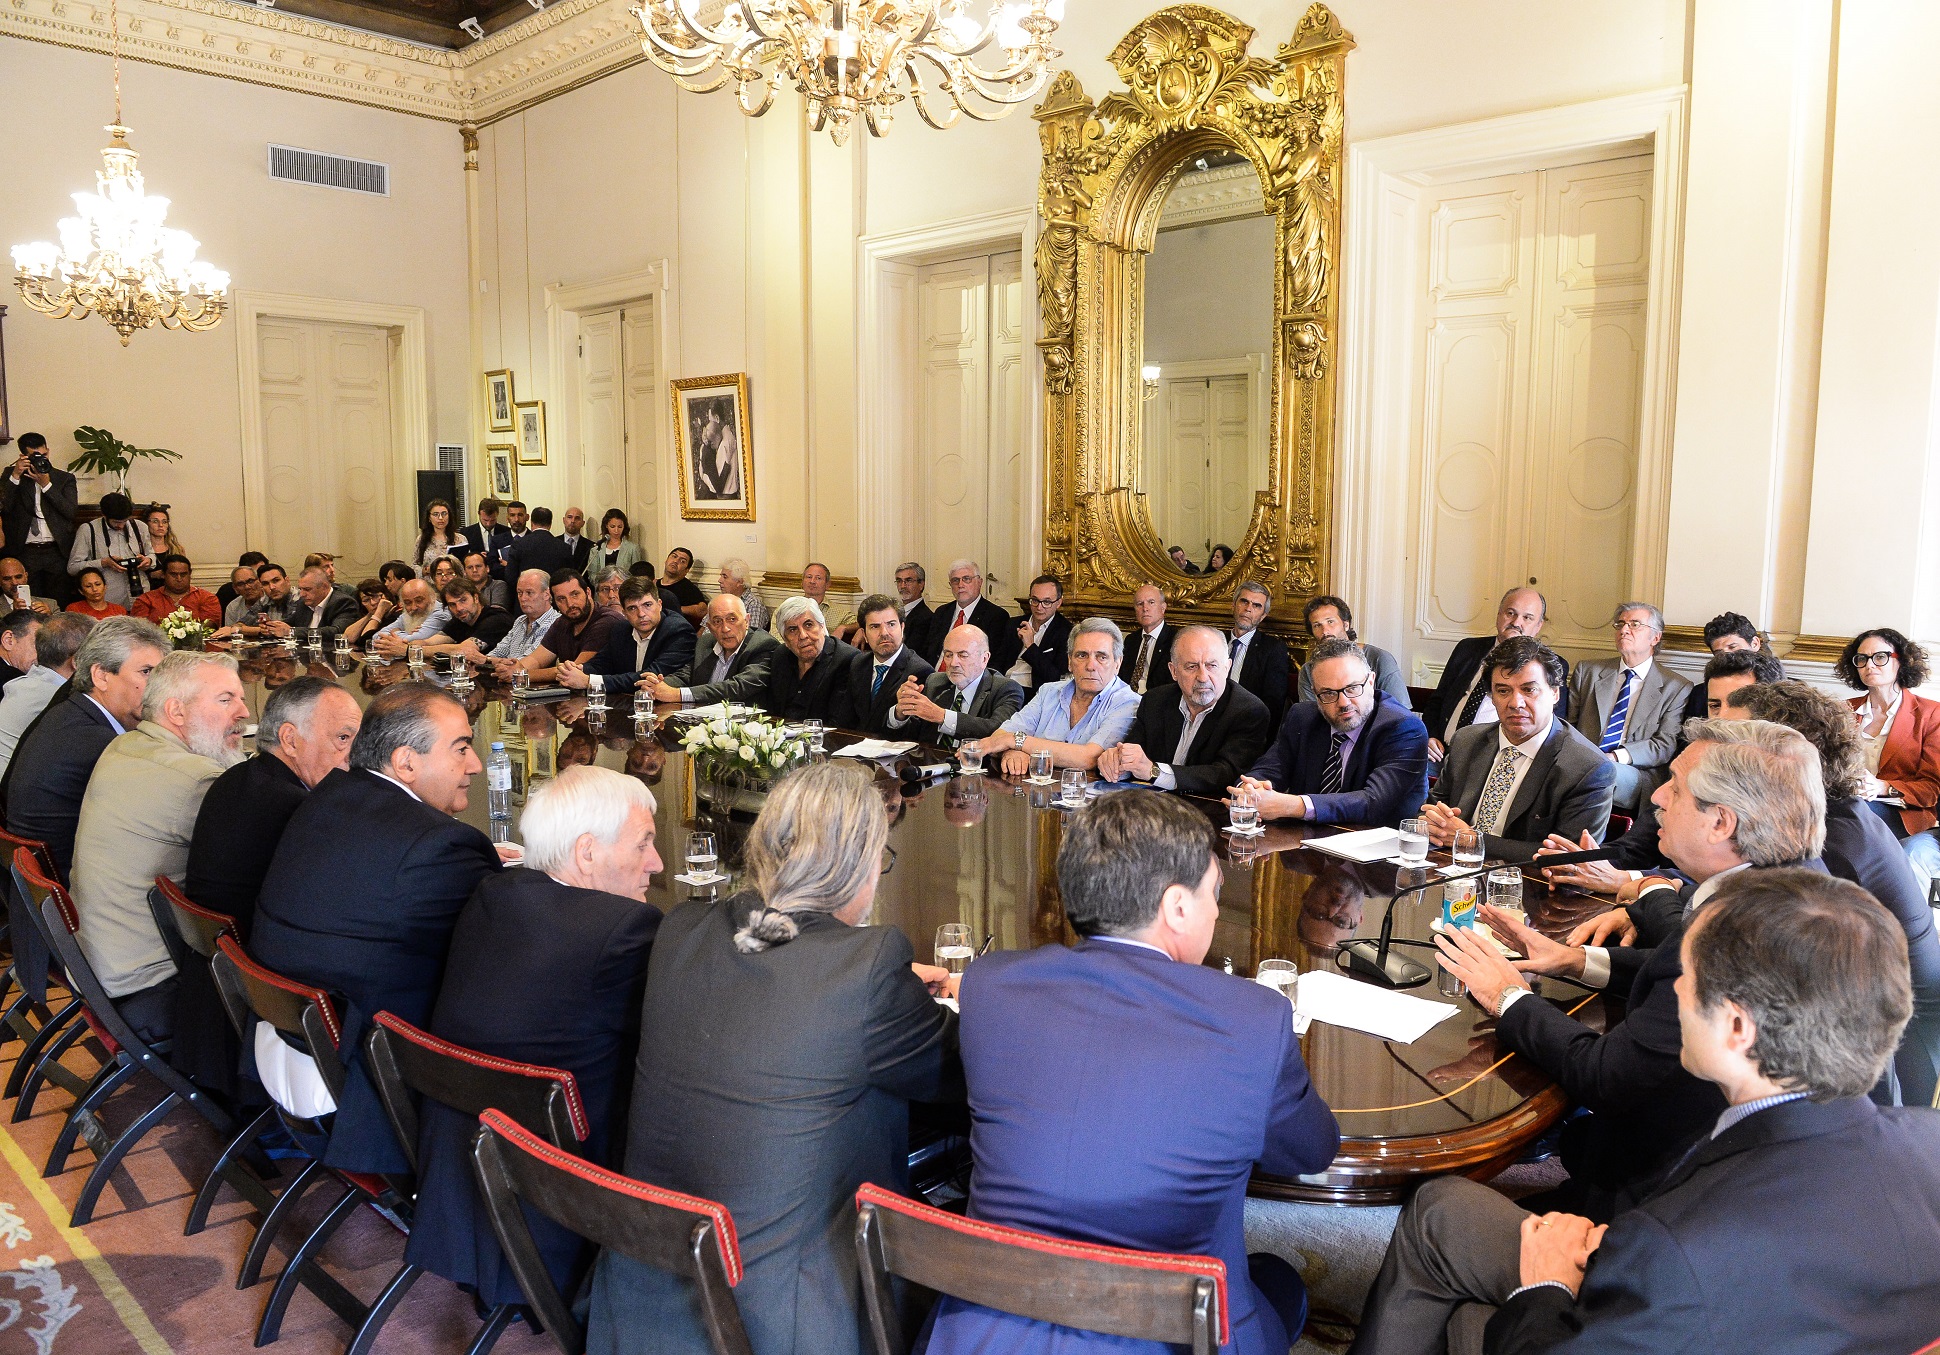 El Presidente firmó el Compromiso Argentino por el Desarrollo y la Solidaridad con organizaciones sindicales, sociales y empresariales